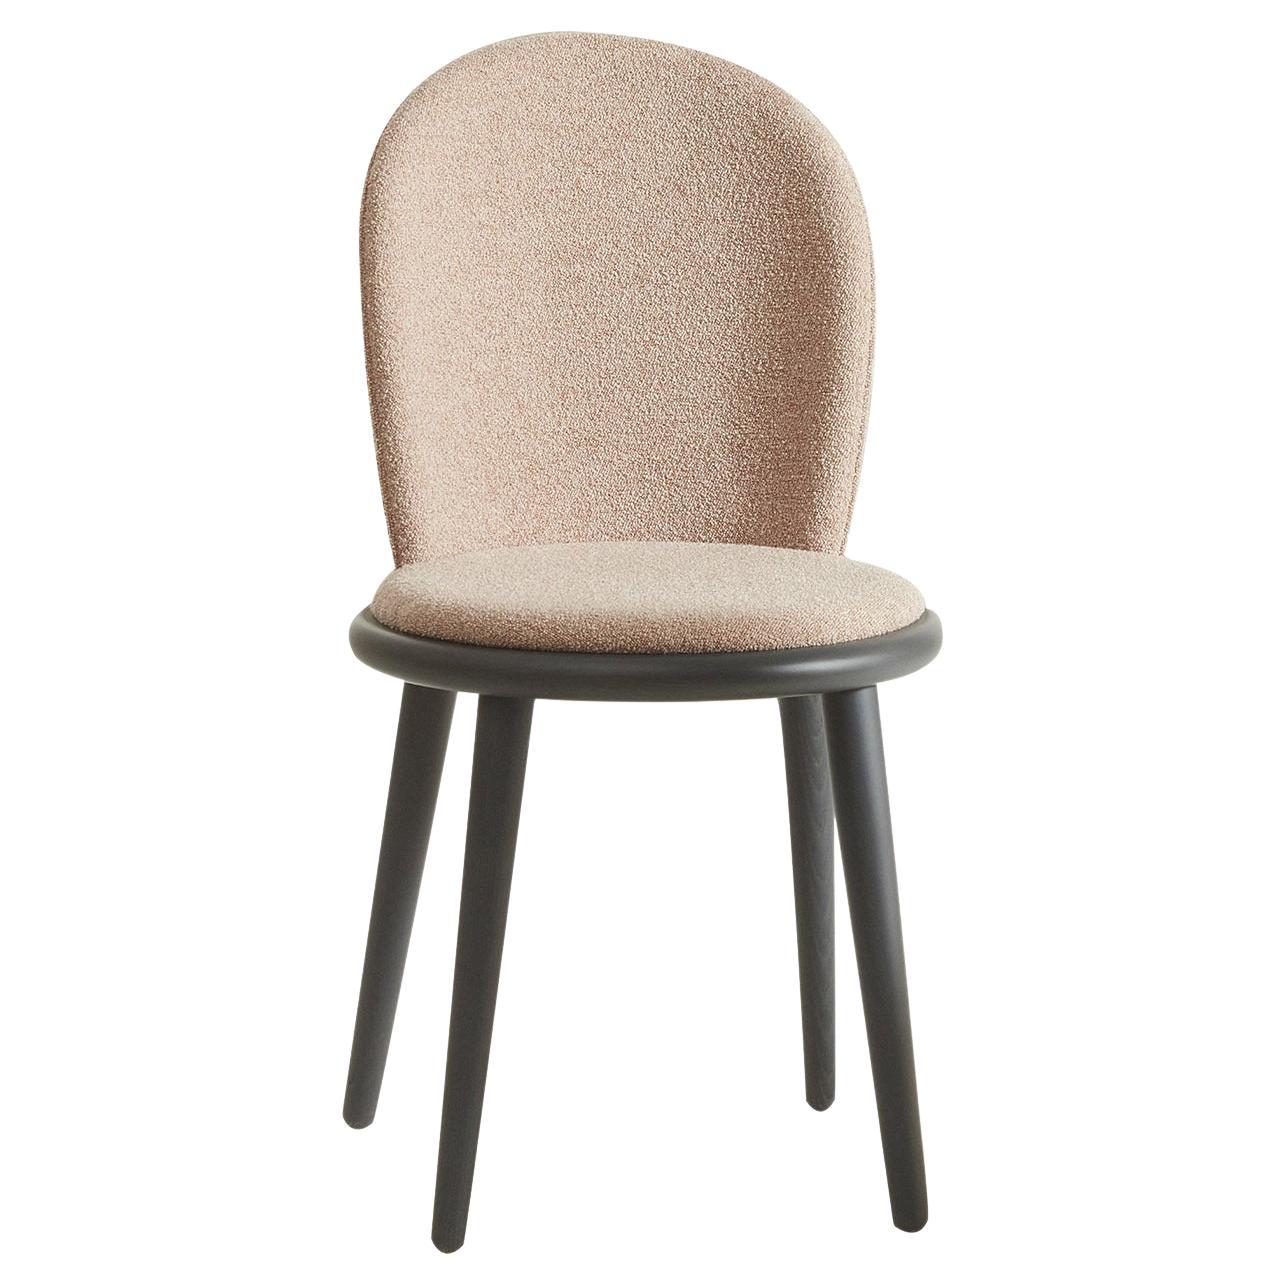 Veretta 921 Gray Chair